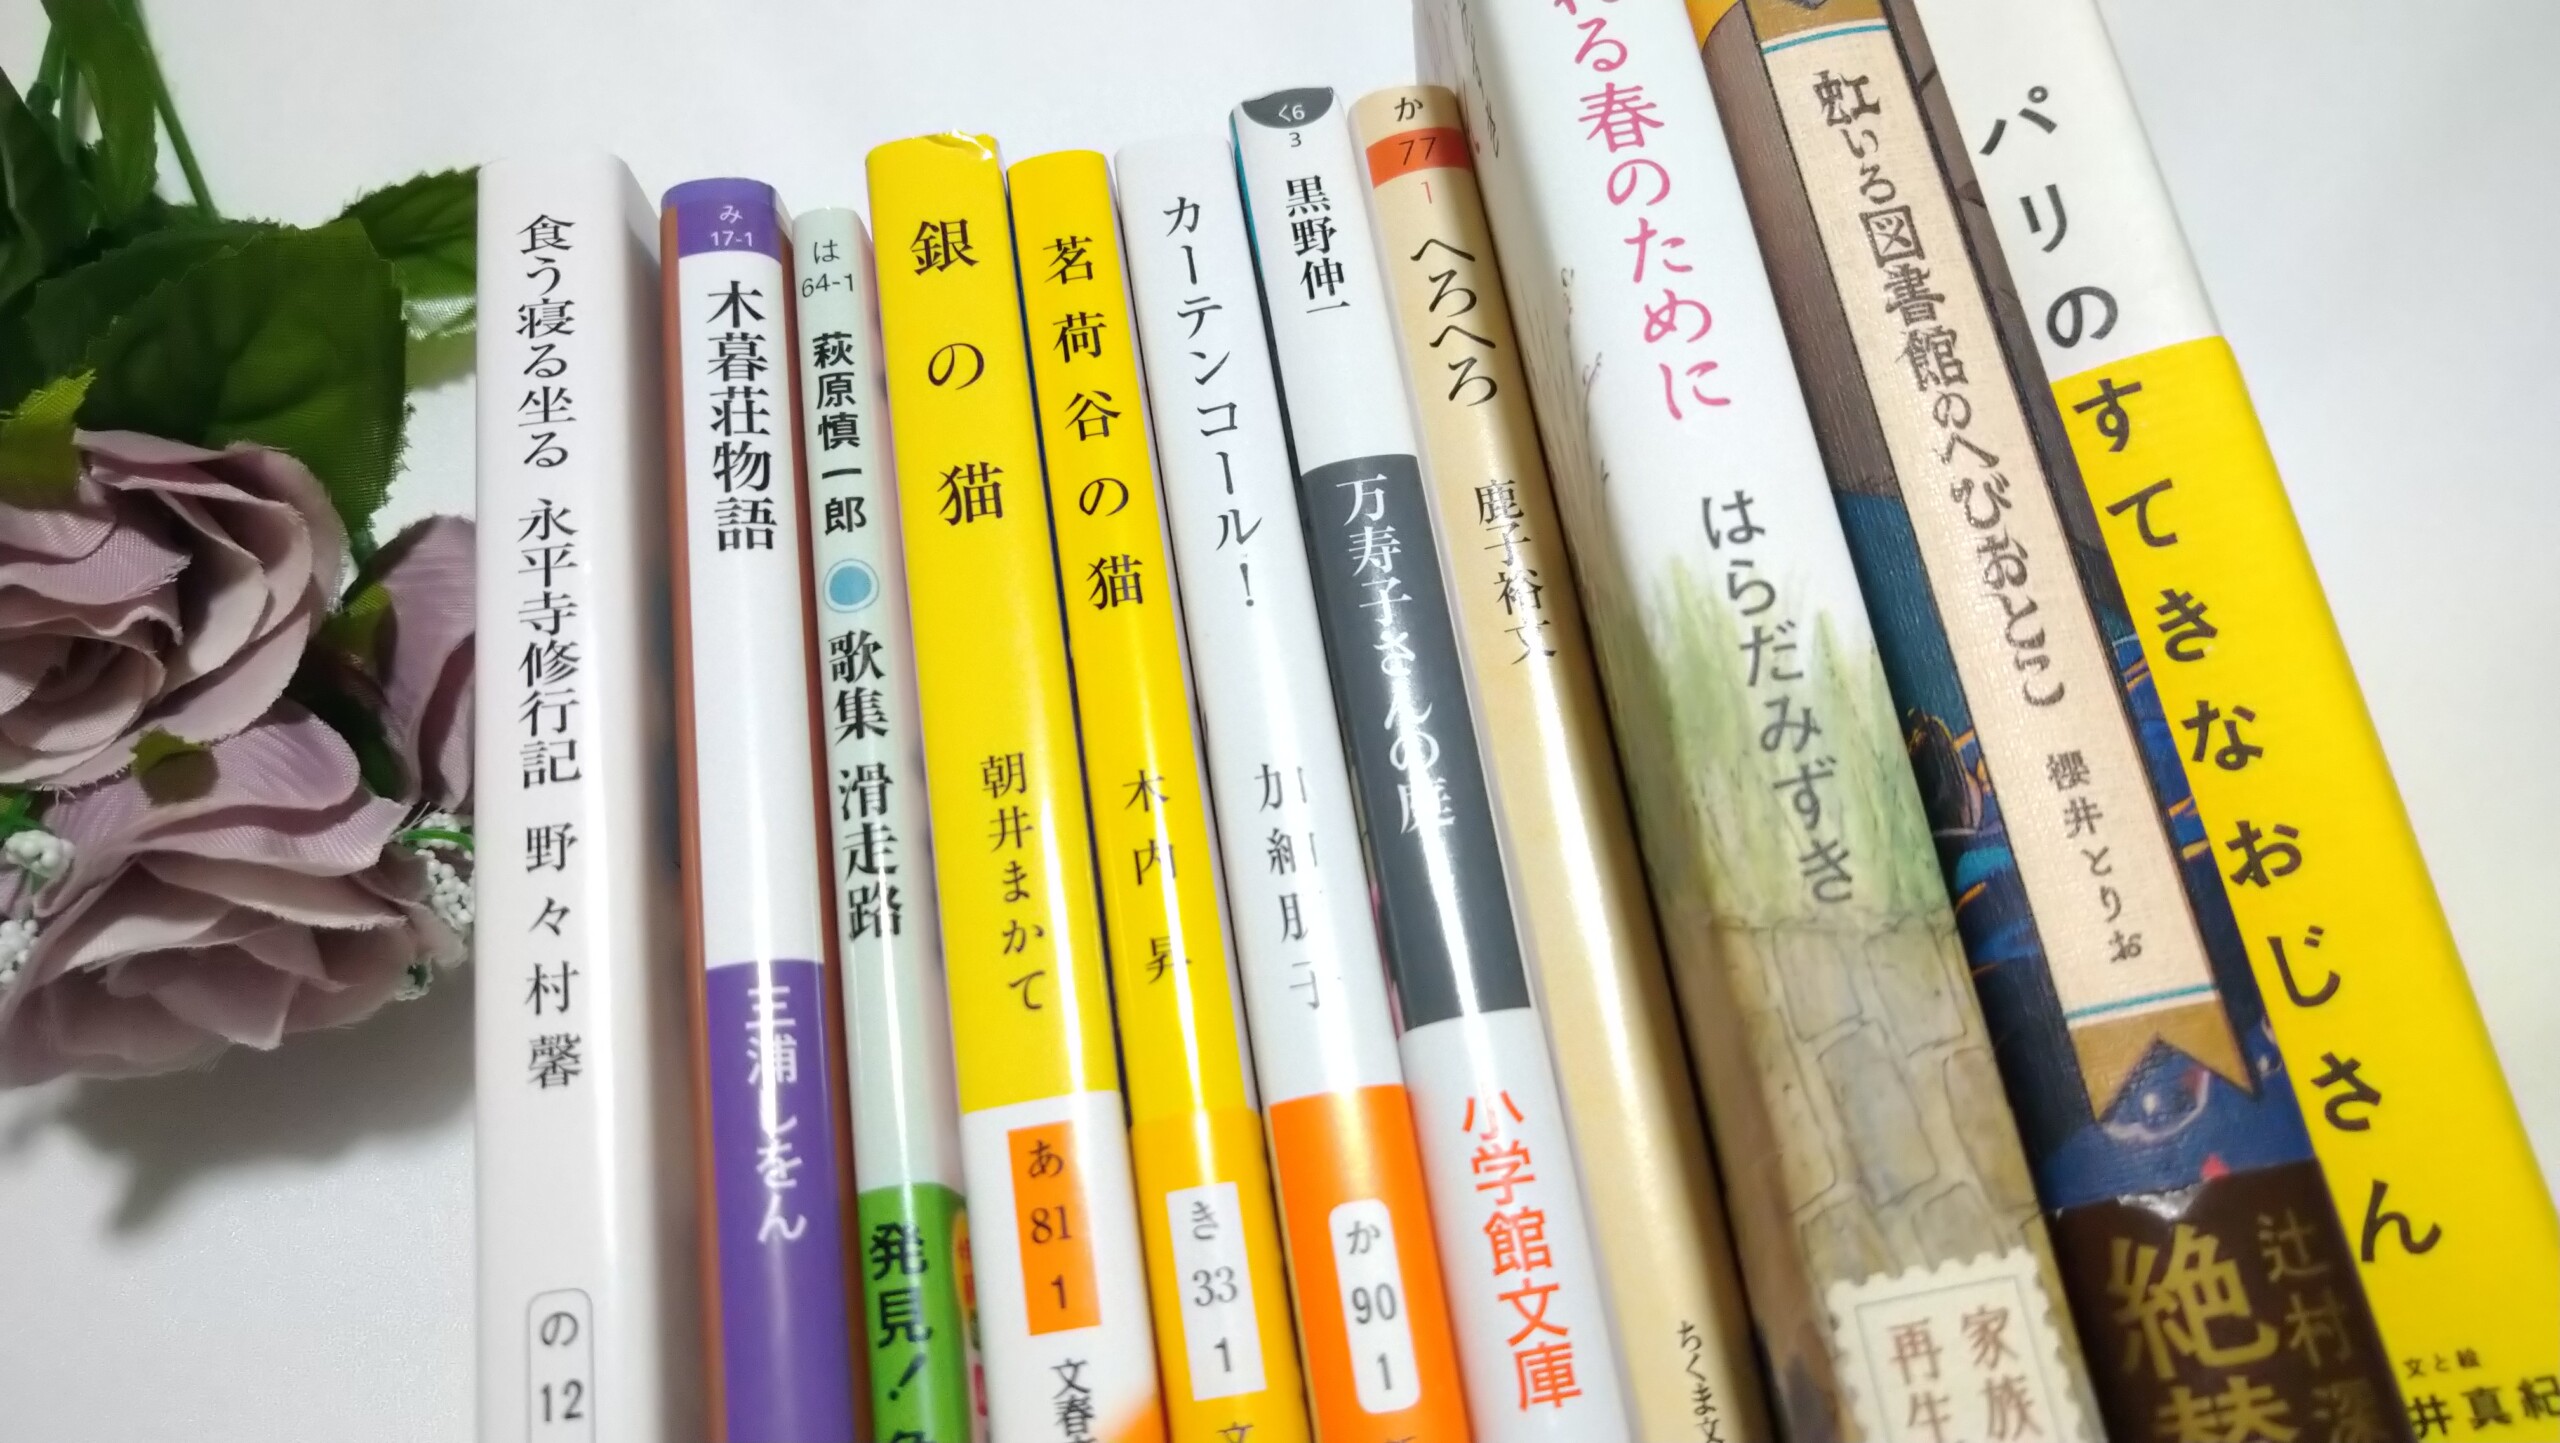 いわた書店「一万円選書」で選んでいただいた本